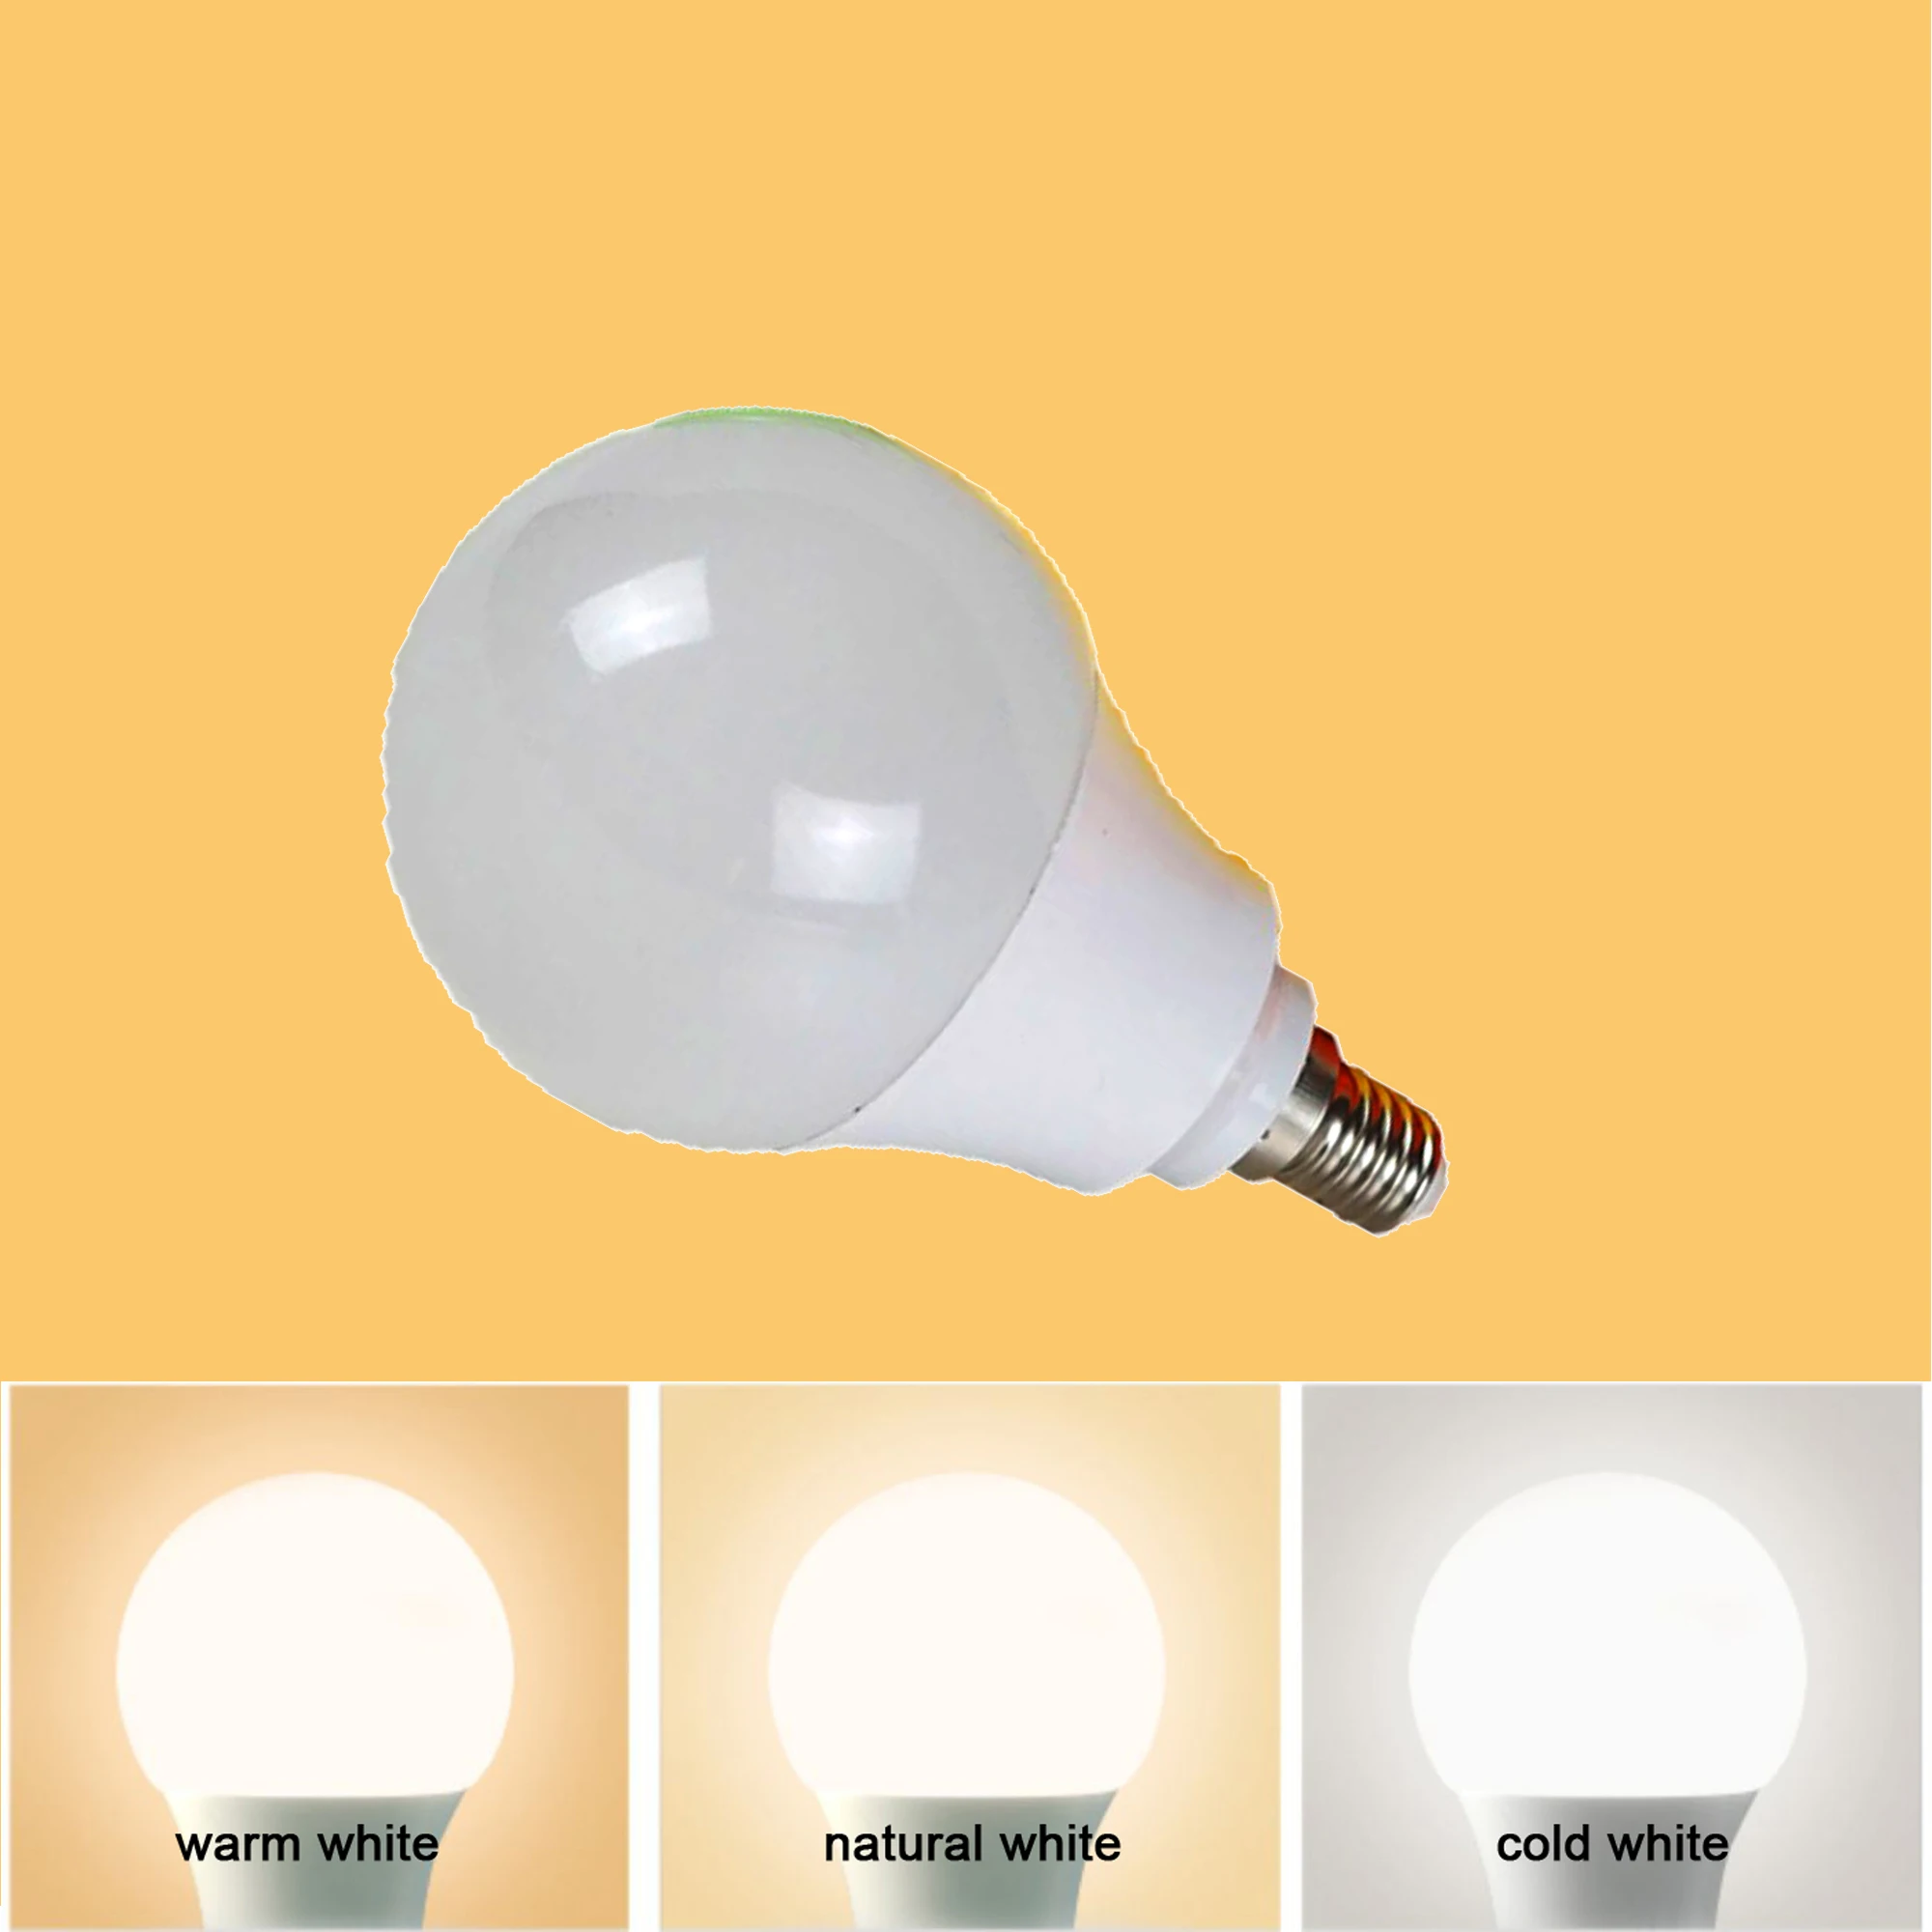 Aukštos CRI RA 95-98 LED Vaikai lempos Lemputė E14 Bazės Tipas Šalta Balta 6000K Natūrali Balta 4000 K Šiltai Balta 3000K 600lm - 1200lm Nuotrauka 3